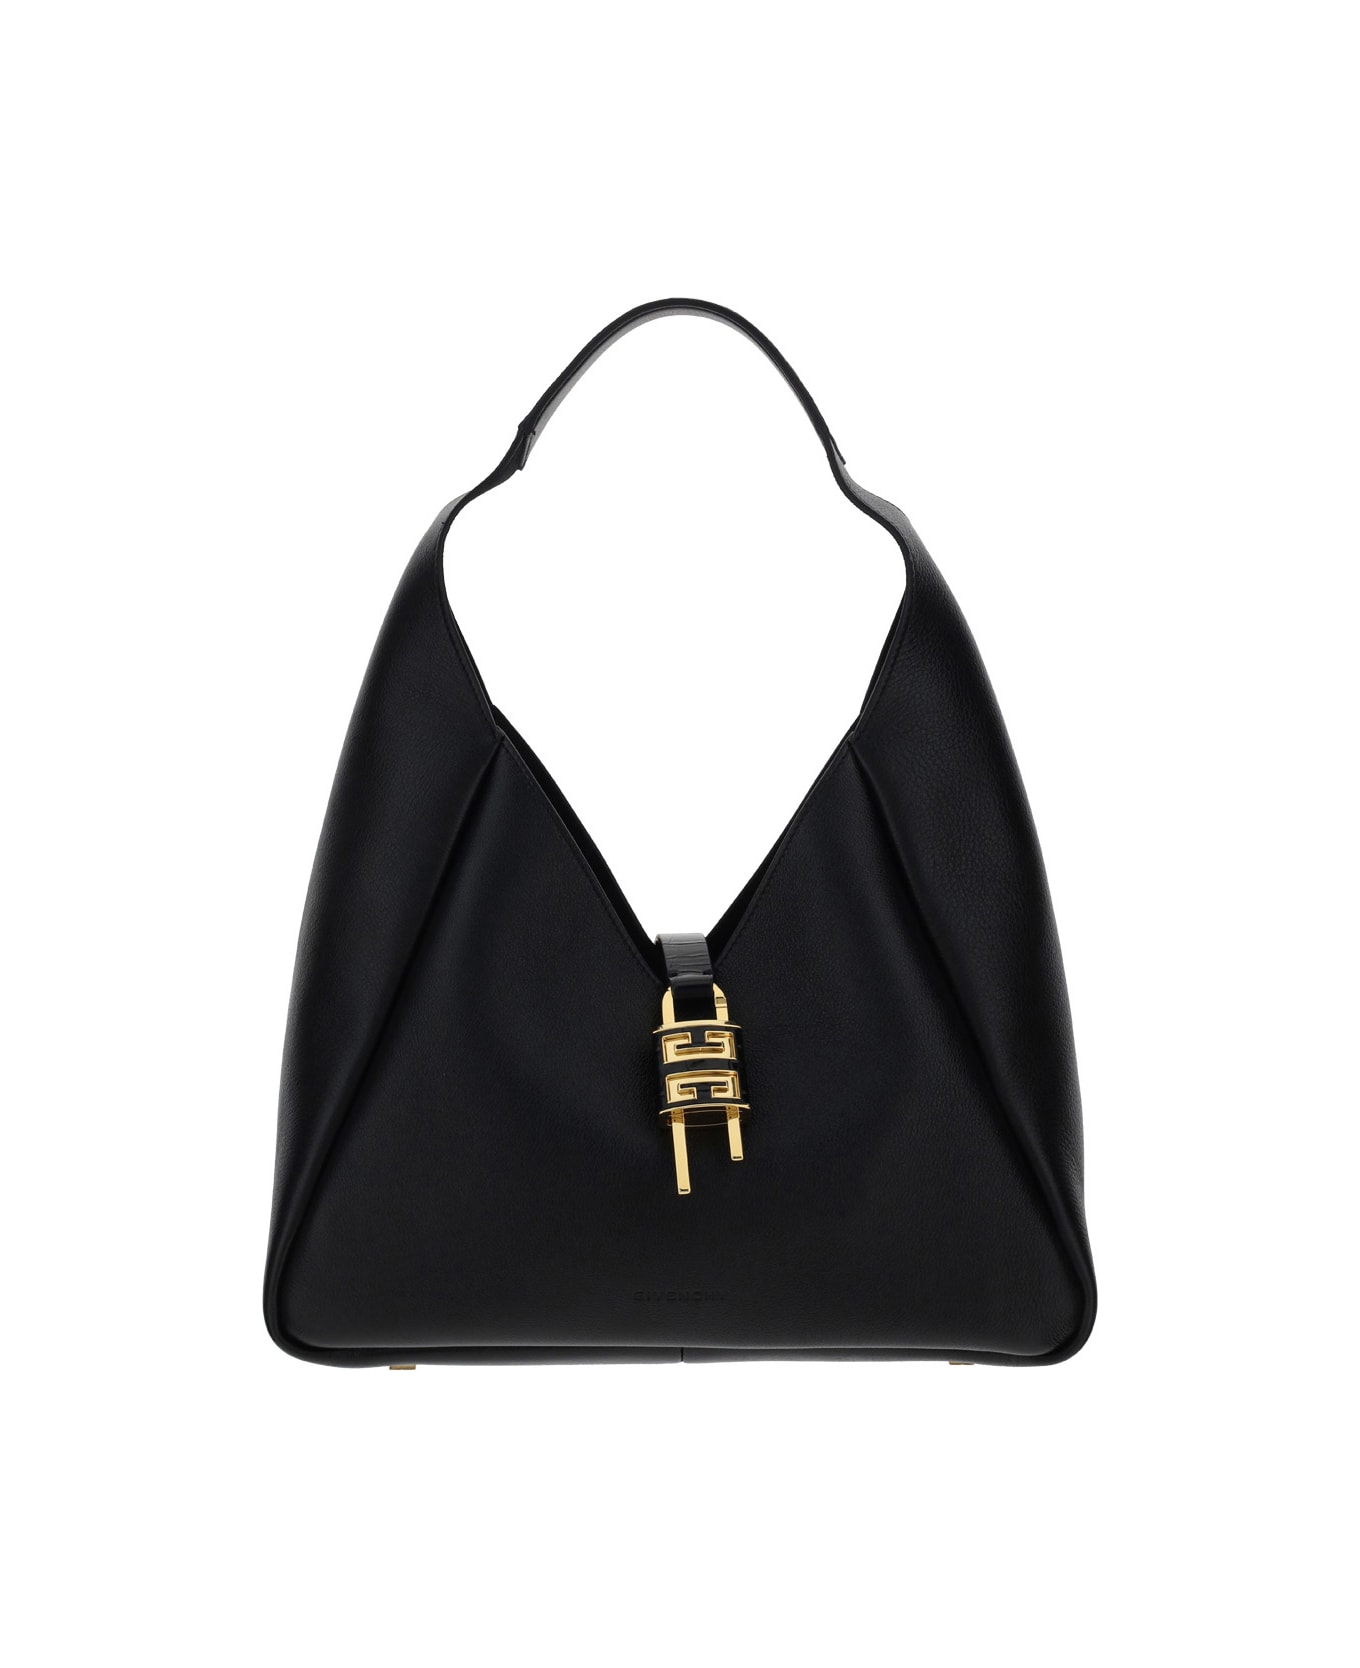 Givenchy G-hobo Shoulder Bag - Black